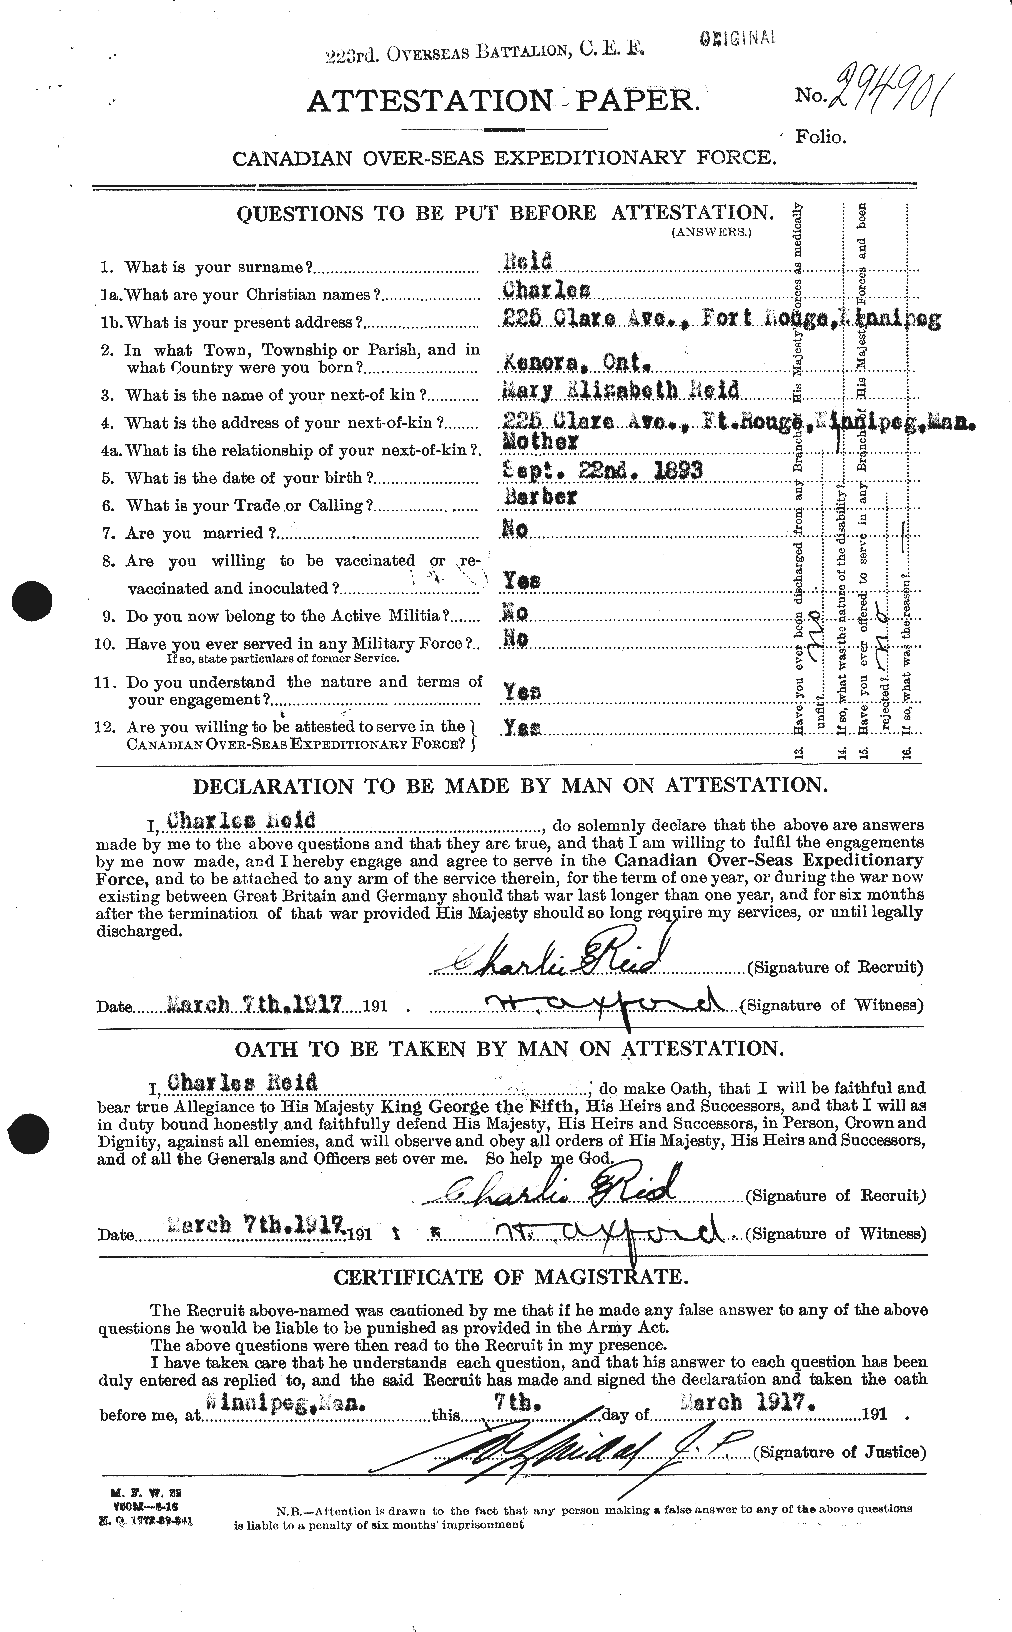 Dossiers du Personnel de la Première Guerre mondiale - CEC 597877a